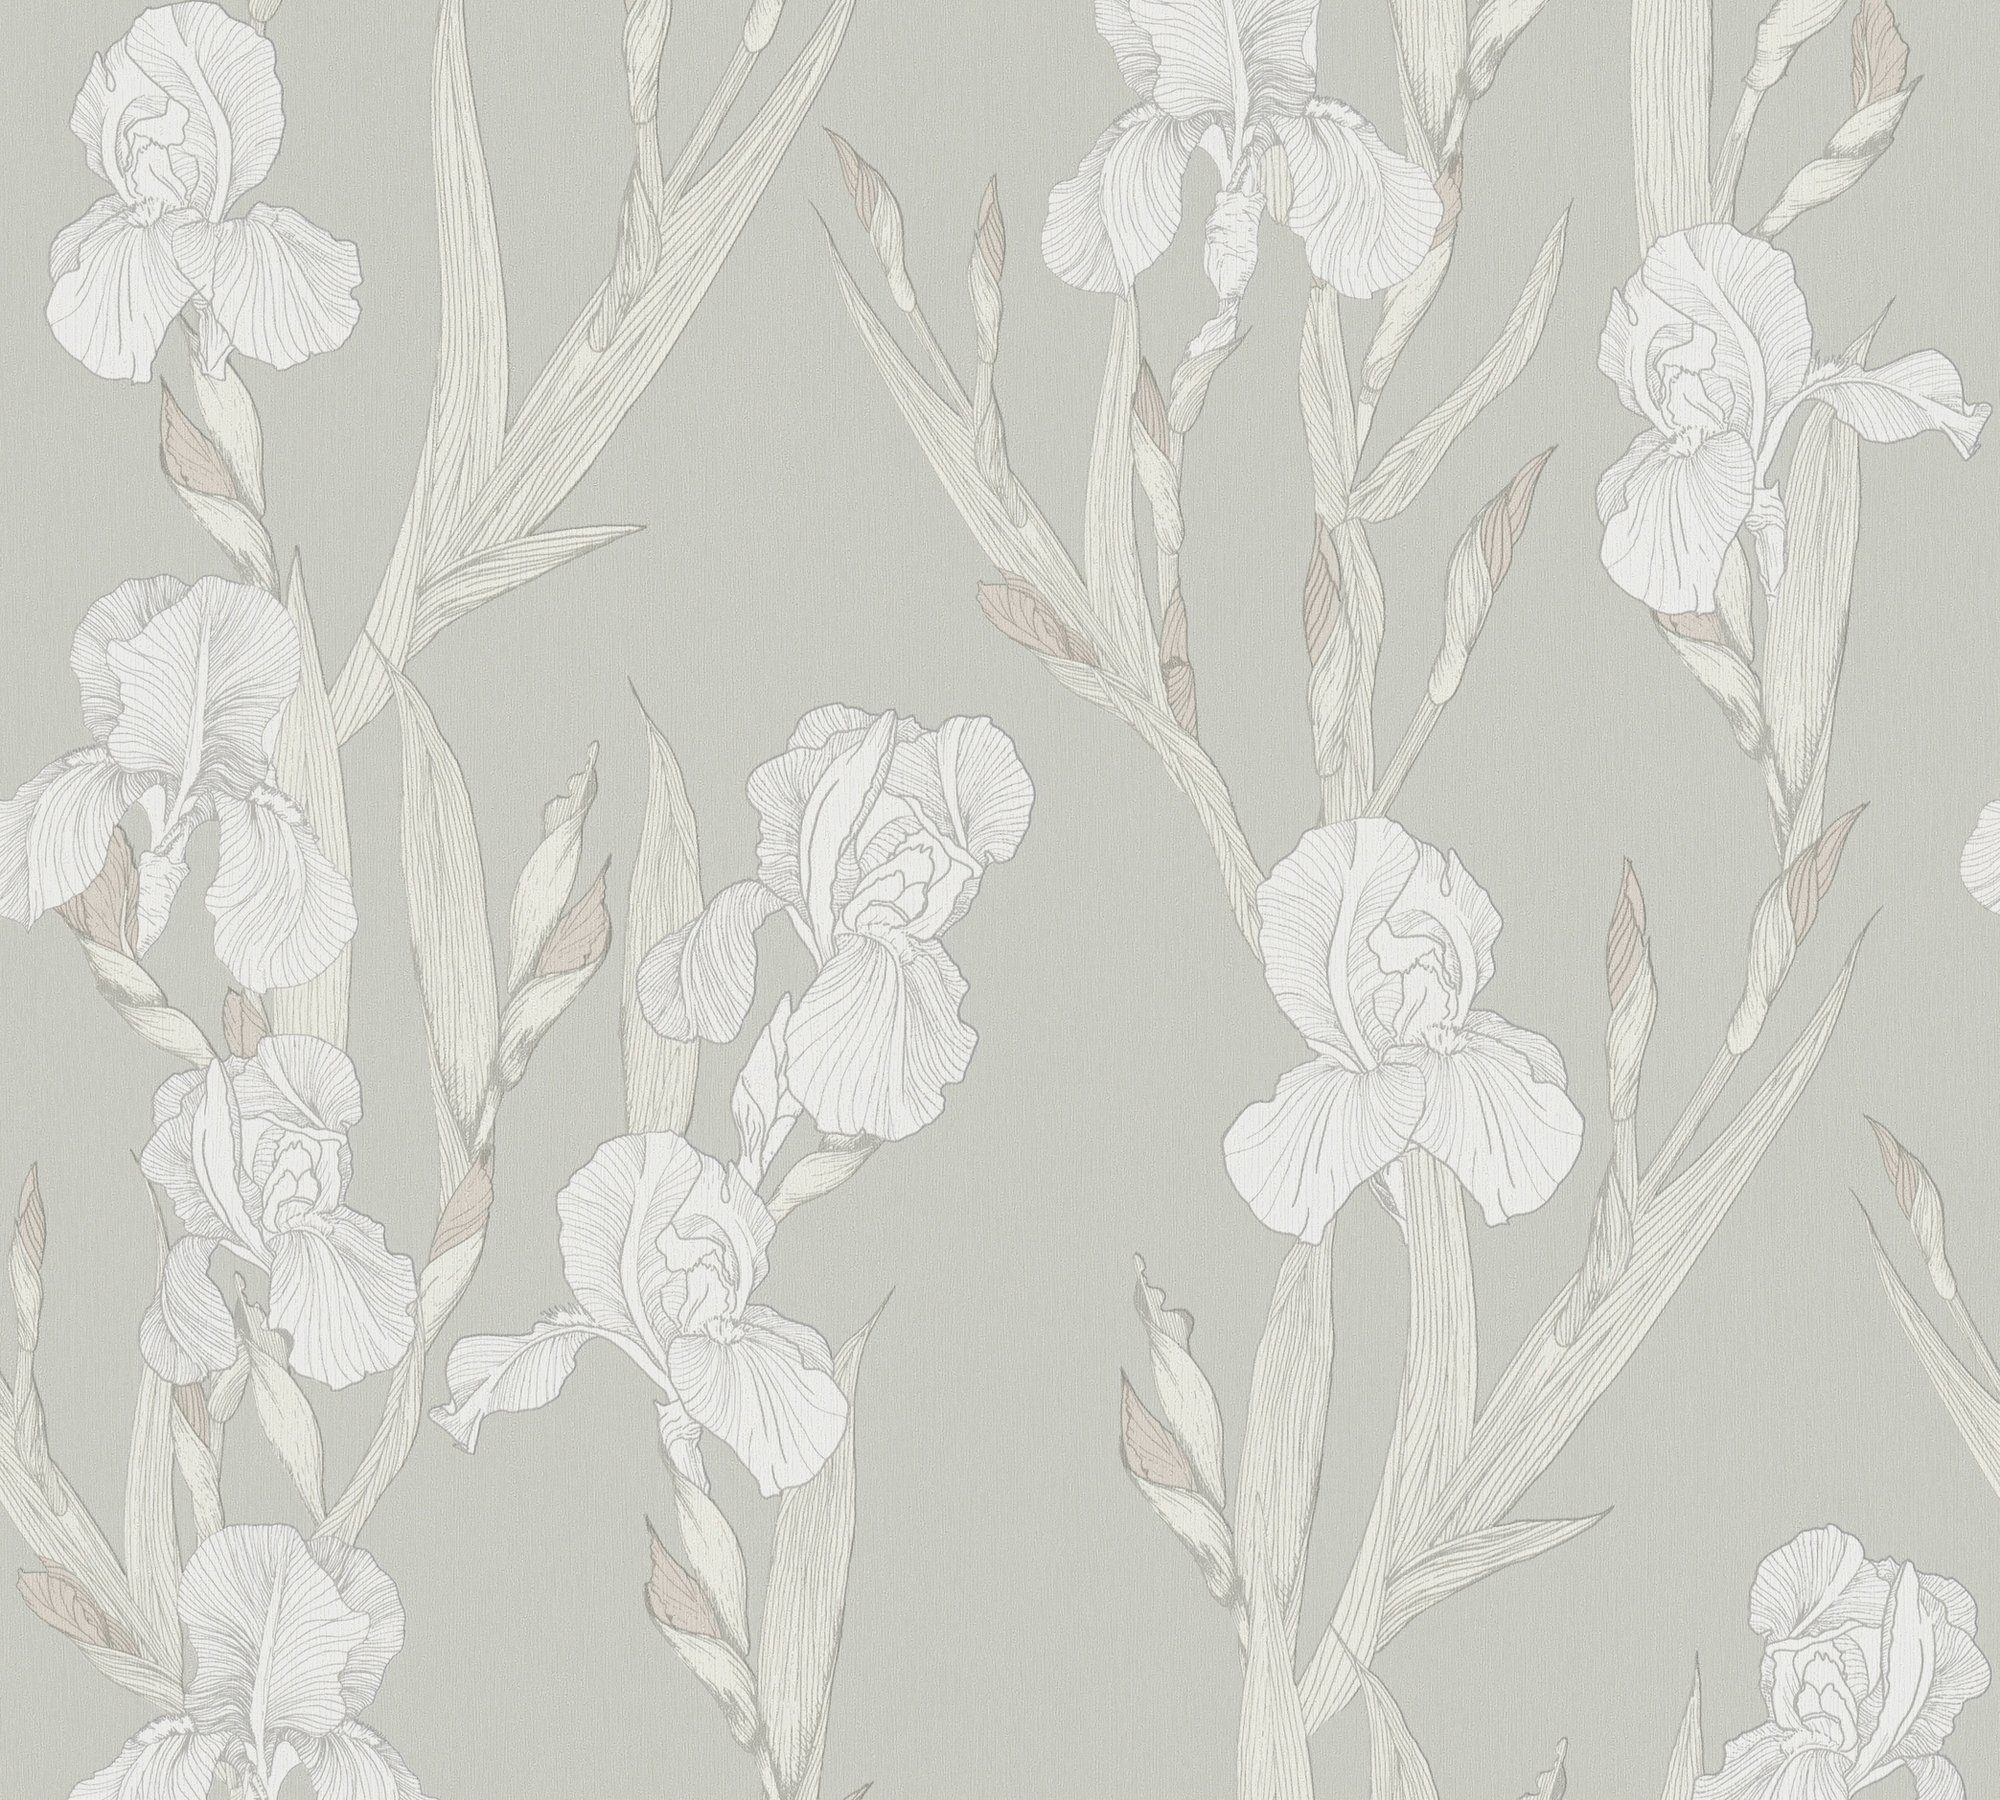 grau/weiß Blumen botanisch, Hechter Création floral, Tapete Designertapete A.S. Vliestapete, Daniel